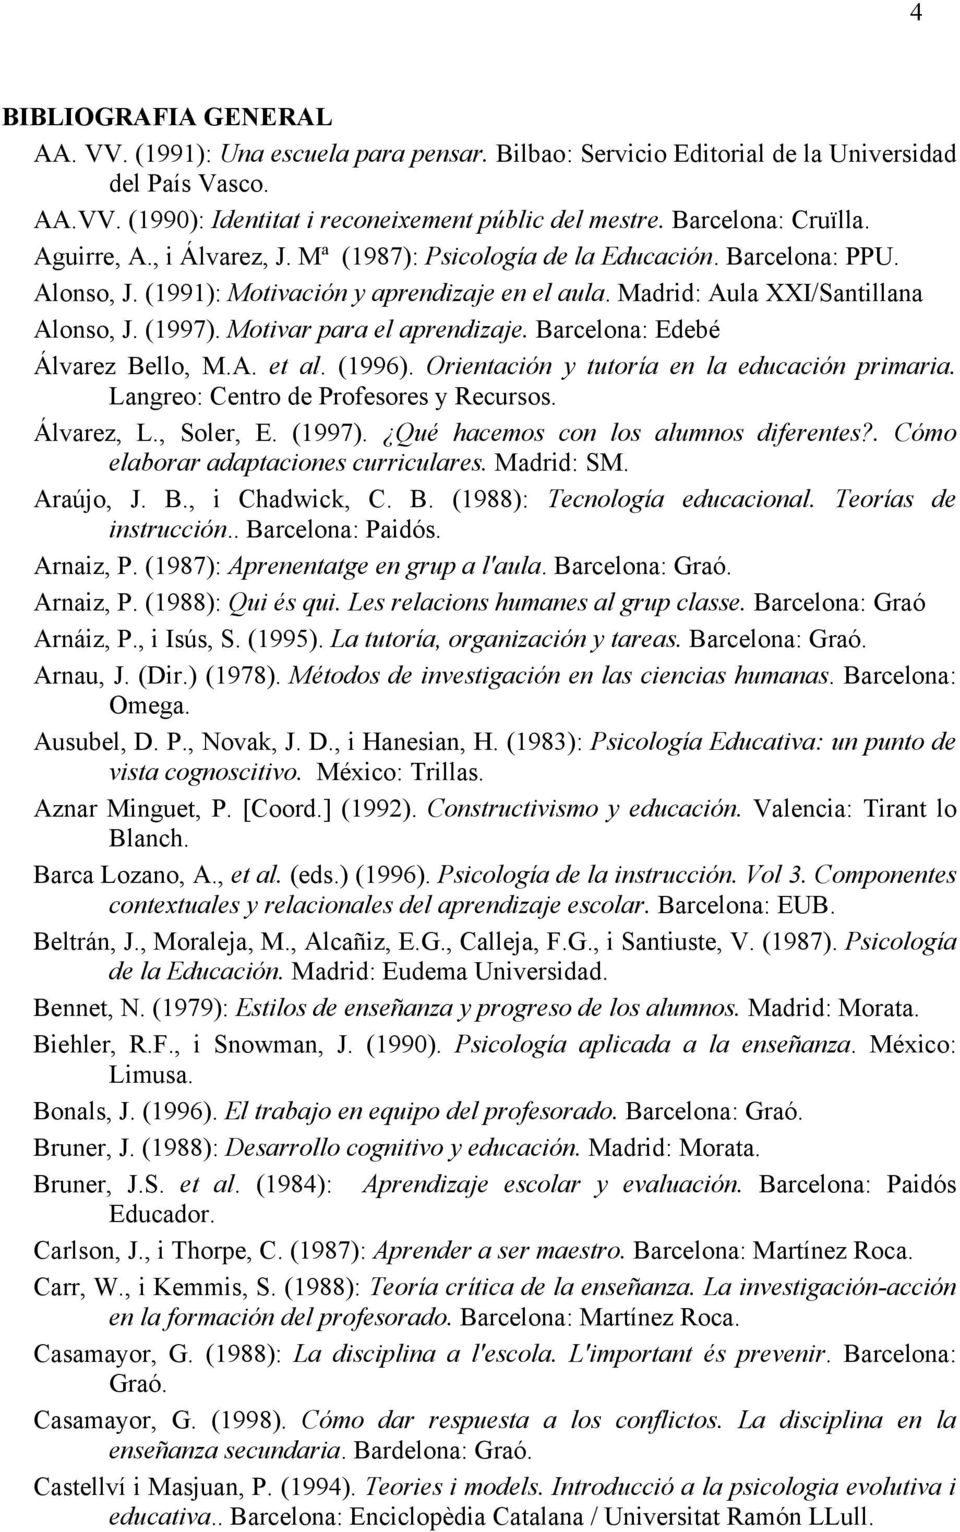 (1997). Motivar para el aprendizaje. Barcelona: Edebé Álvarez Bello, M.A. et al. (1996). Orientación y tutoría en la educación primaria. Langreo: Centro de Profesores y Recursos. Álvarez, L.